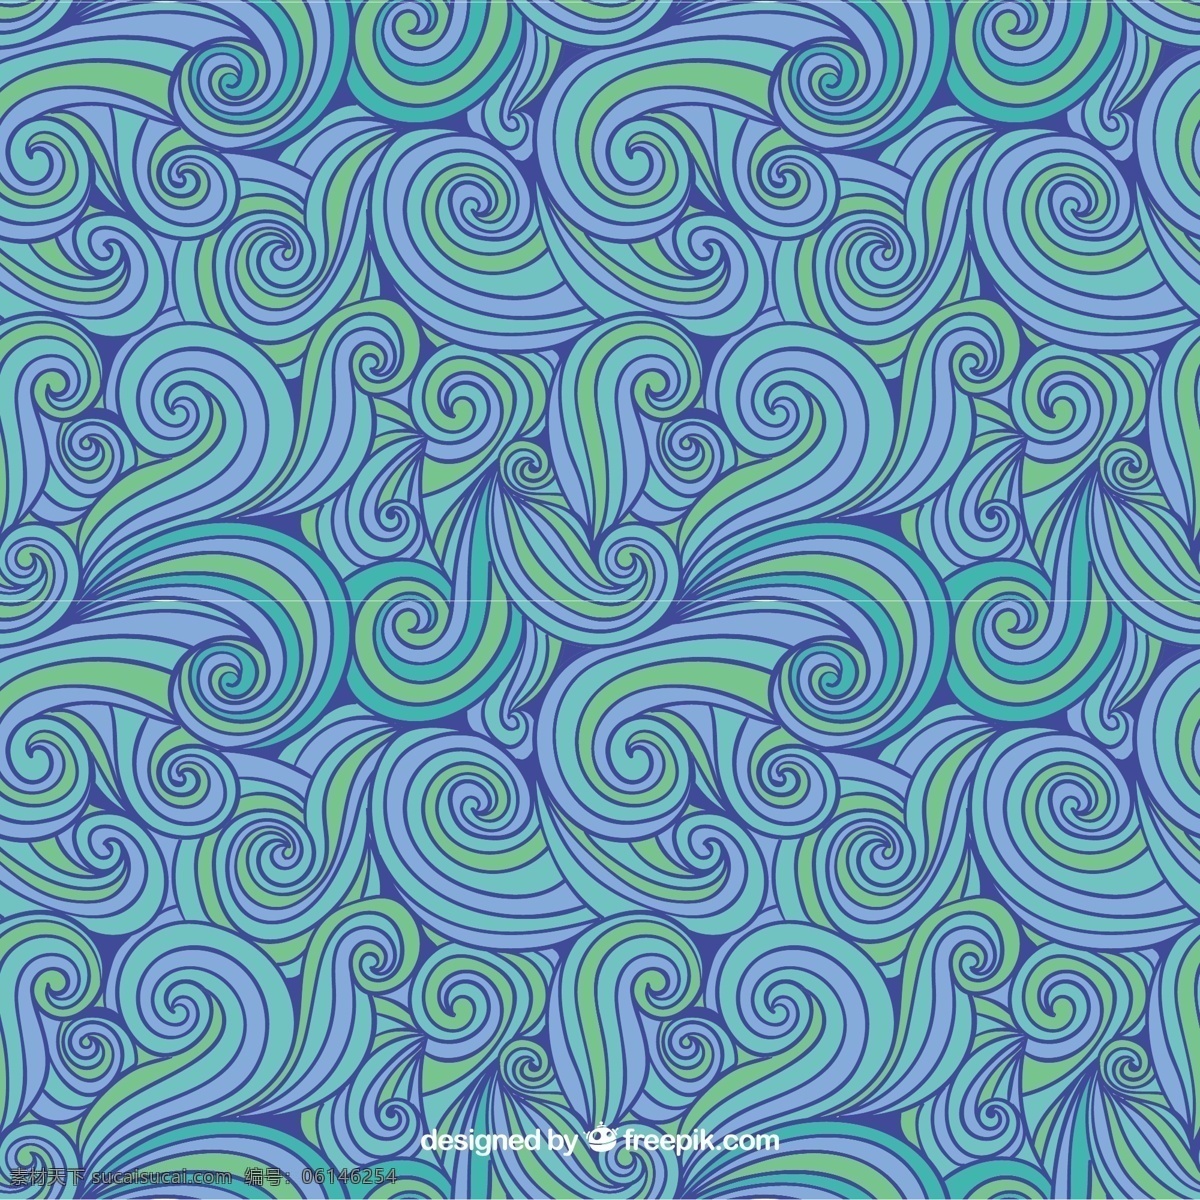 手绘 抽象 图案 蓝色 绿色 色调 模式 抽象的 一方面 波 涡流 绘图 无缝模式 无缝 手绘画 抽象画 波型 抽象图案 蓝色图案 粗略的 纠结的 音调 青色 天蓝色